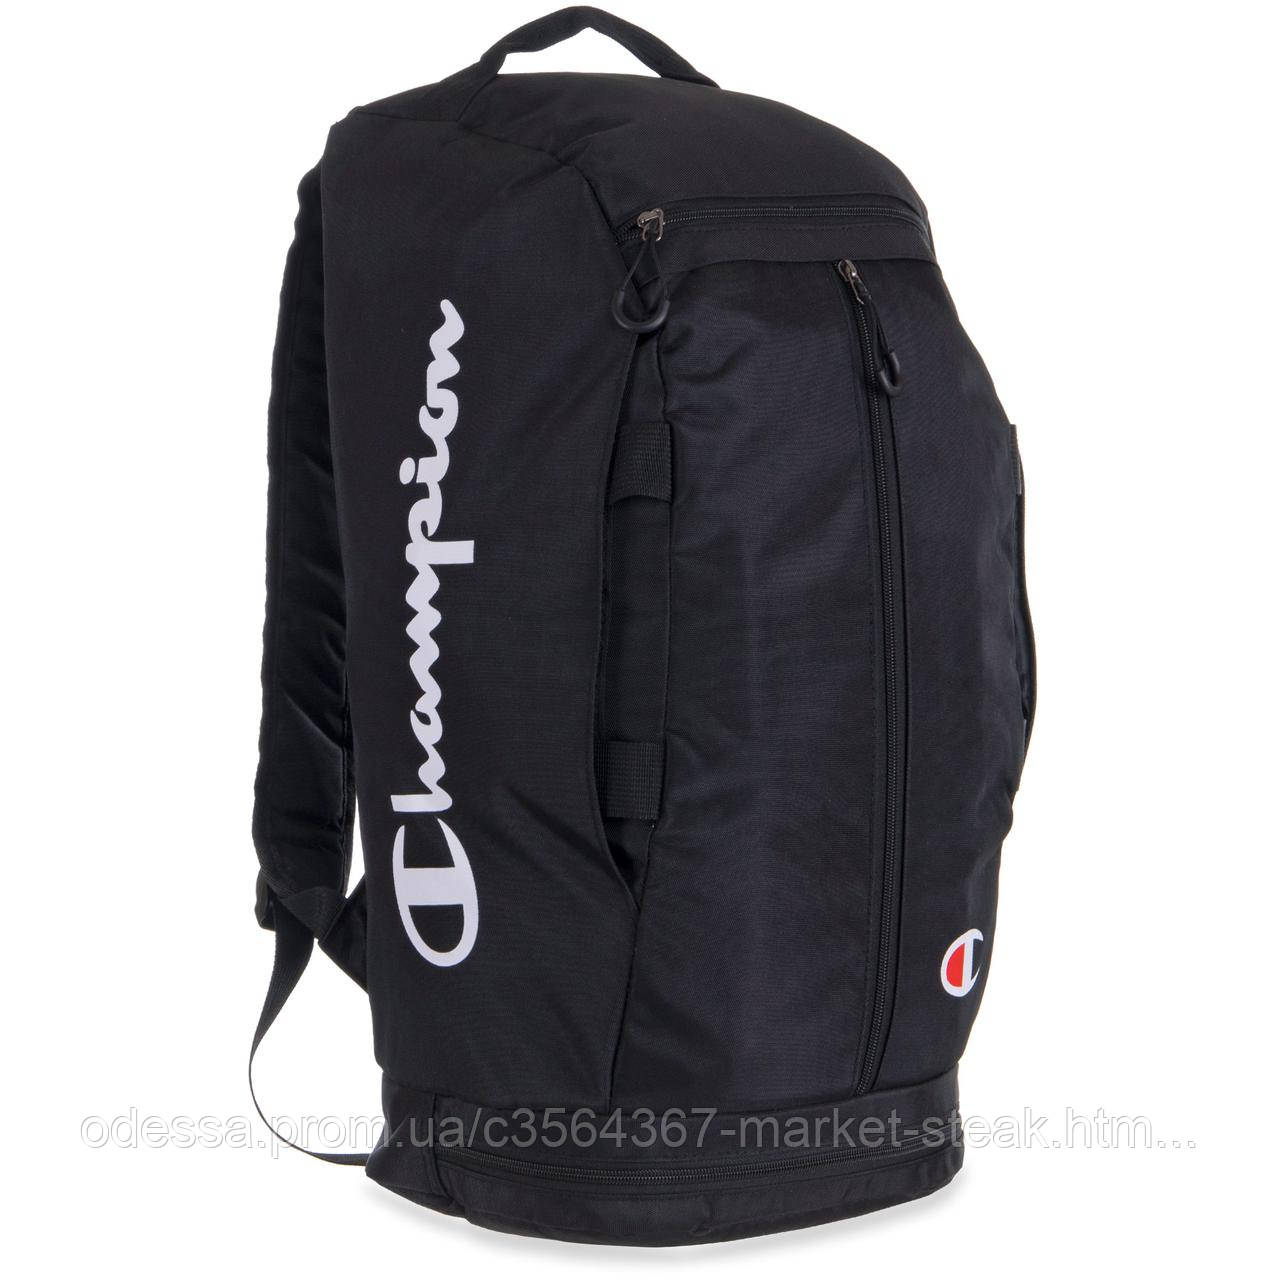 

Рюкзак-сумка 2в1 CHAMPION 9101 30л цвета в ассортименте, Серый